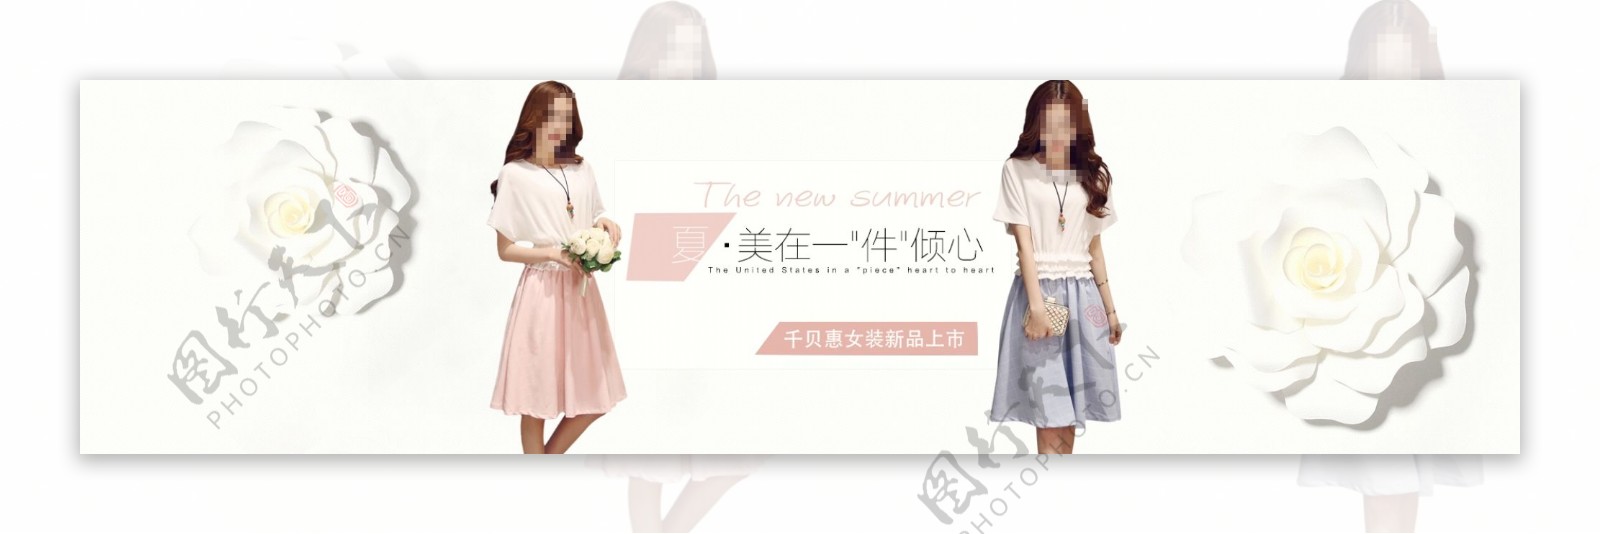 千贝惠女装夏季单品主题活动海报